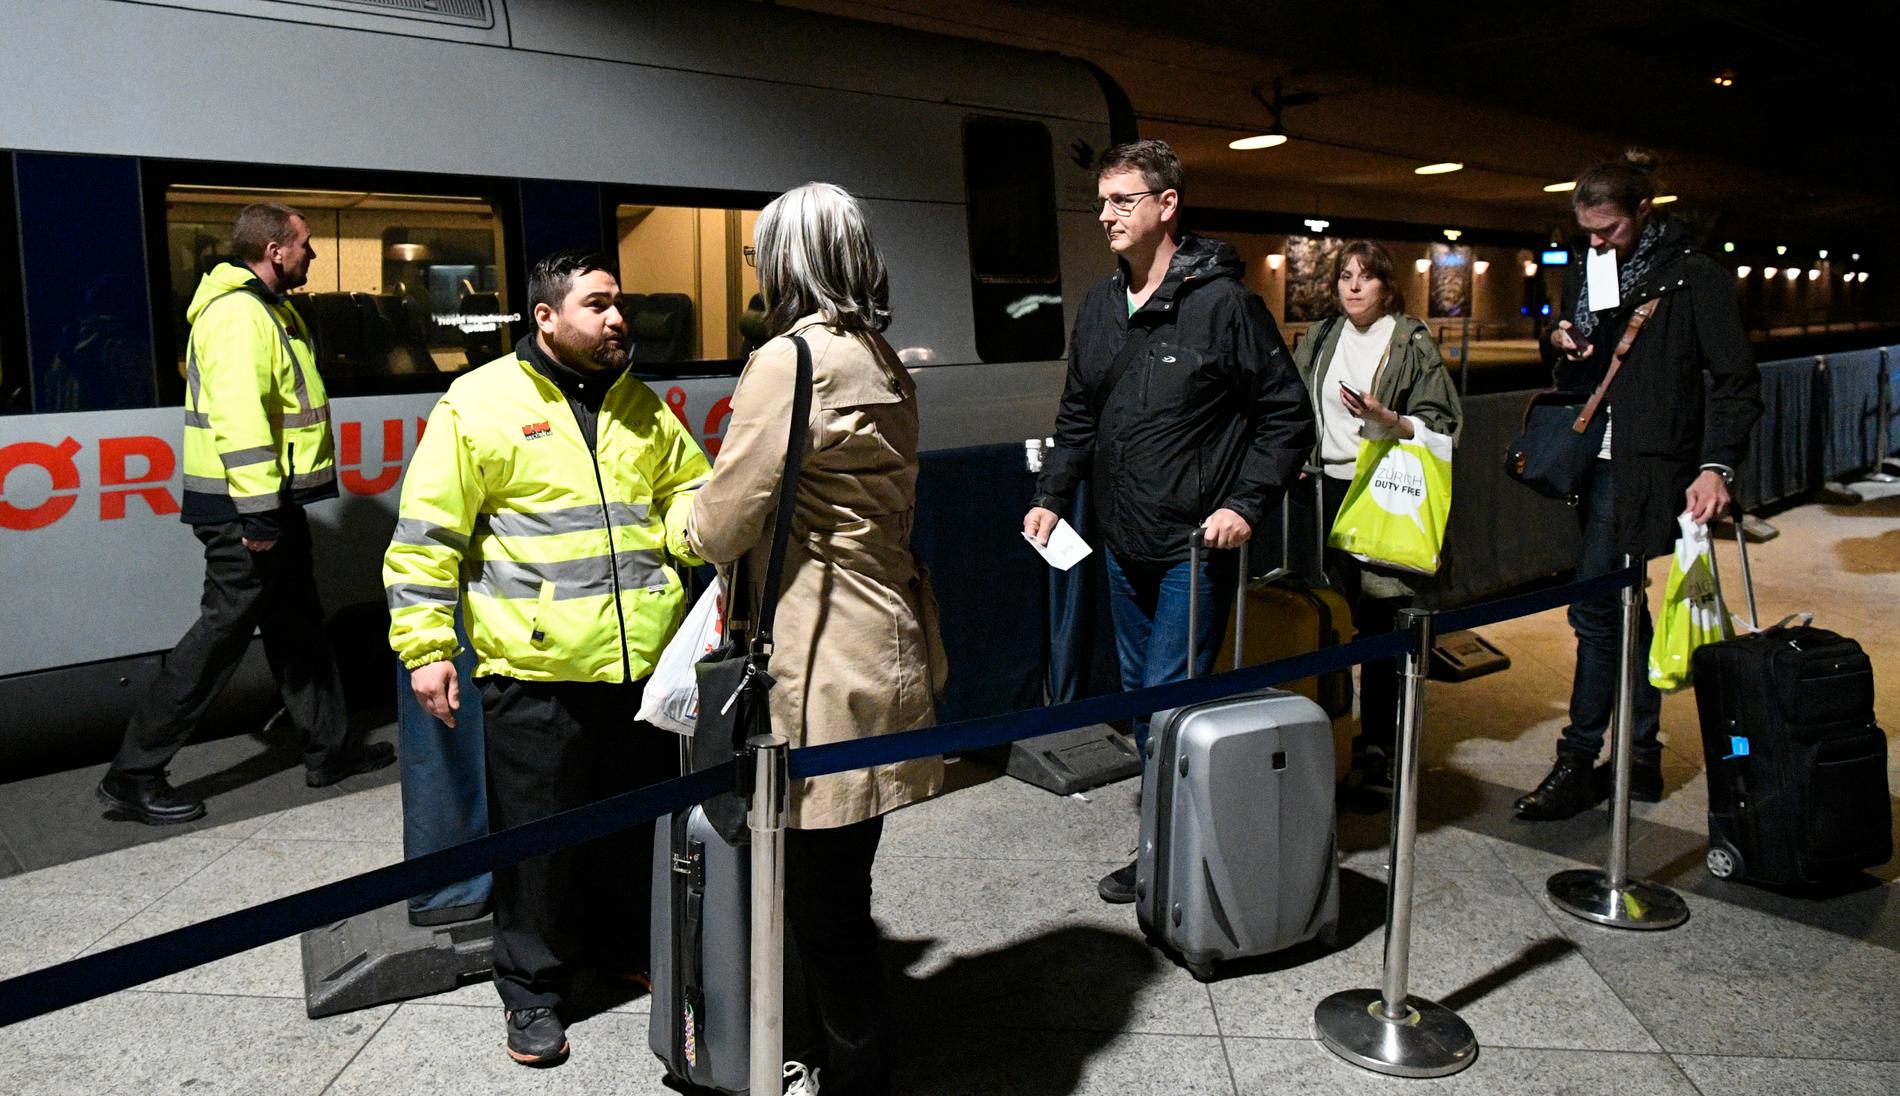 ID-kontroll av passagerare på tåget från Kastrup till Malmö, strax innan kontrollerna togs bort våren 2017. Arkivbild.